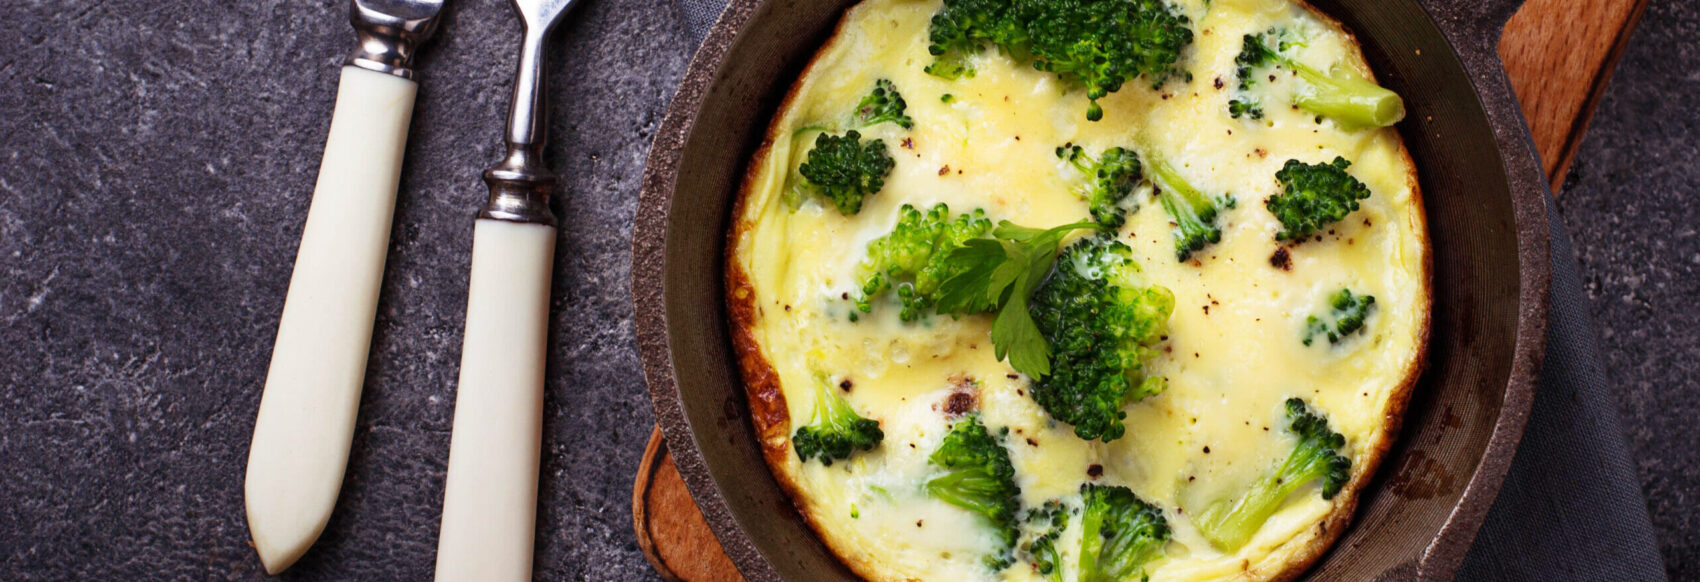 Couscous met rode biet & omelet met broccoli